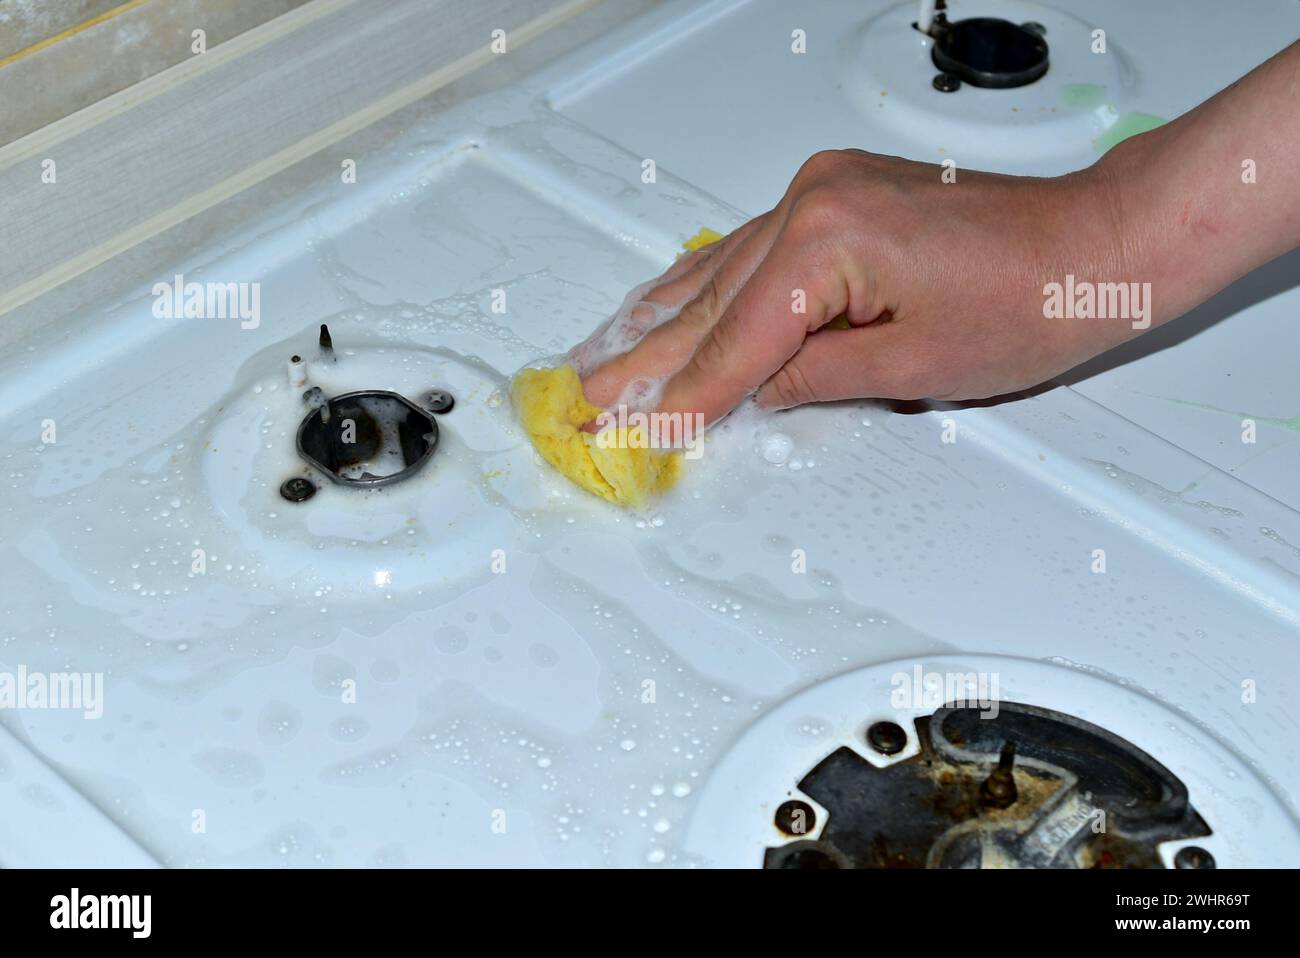 Sur l'image, une femme lave la surface d'une cuisinière à gaz avec une éponge et des détergents. Banque D'Images